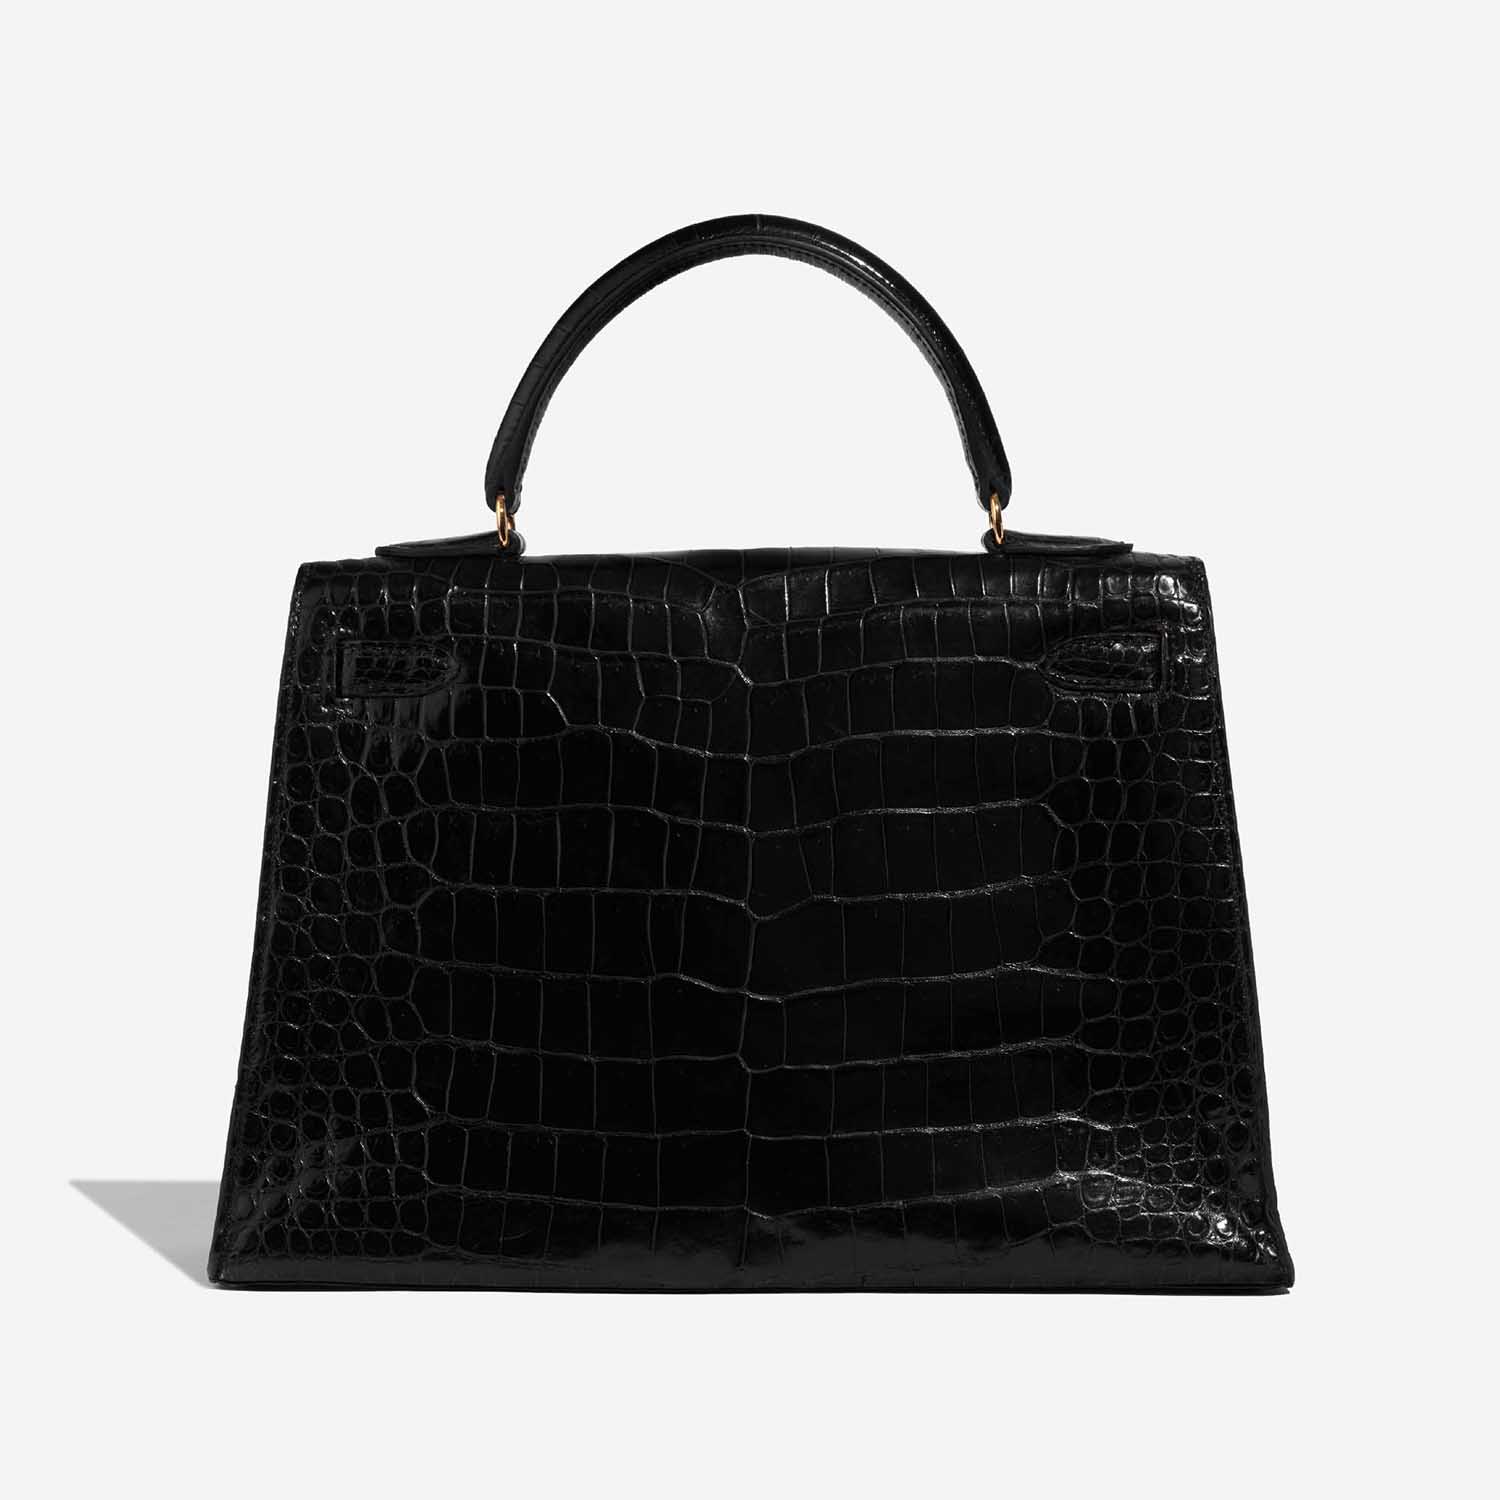 Hermès Kelly 32 Schwarz 5B S | Verkaufen Sie Ihre Designer-Tasche auf Saclab.com